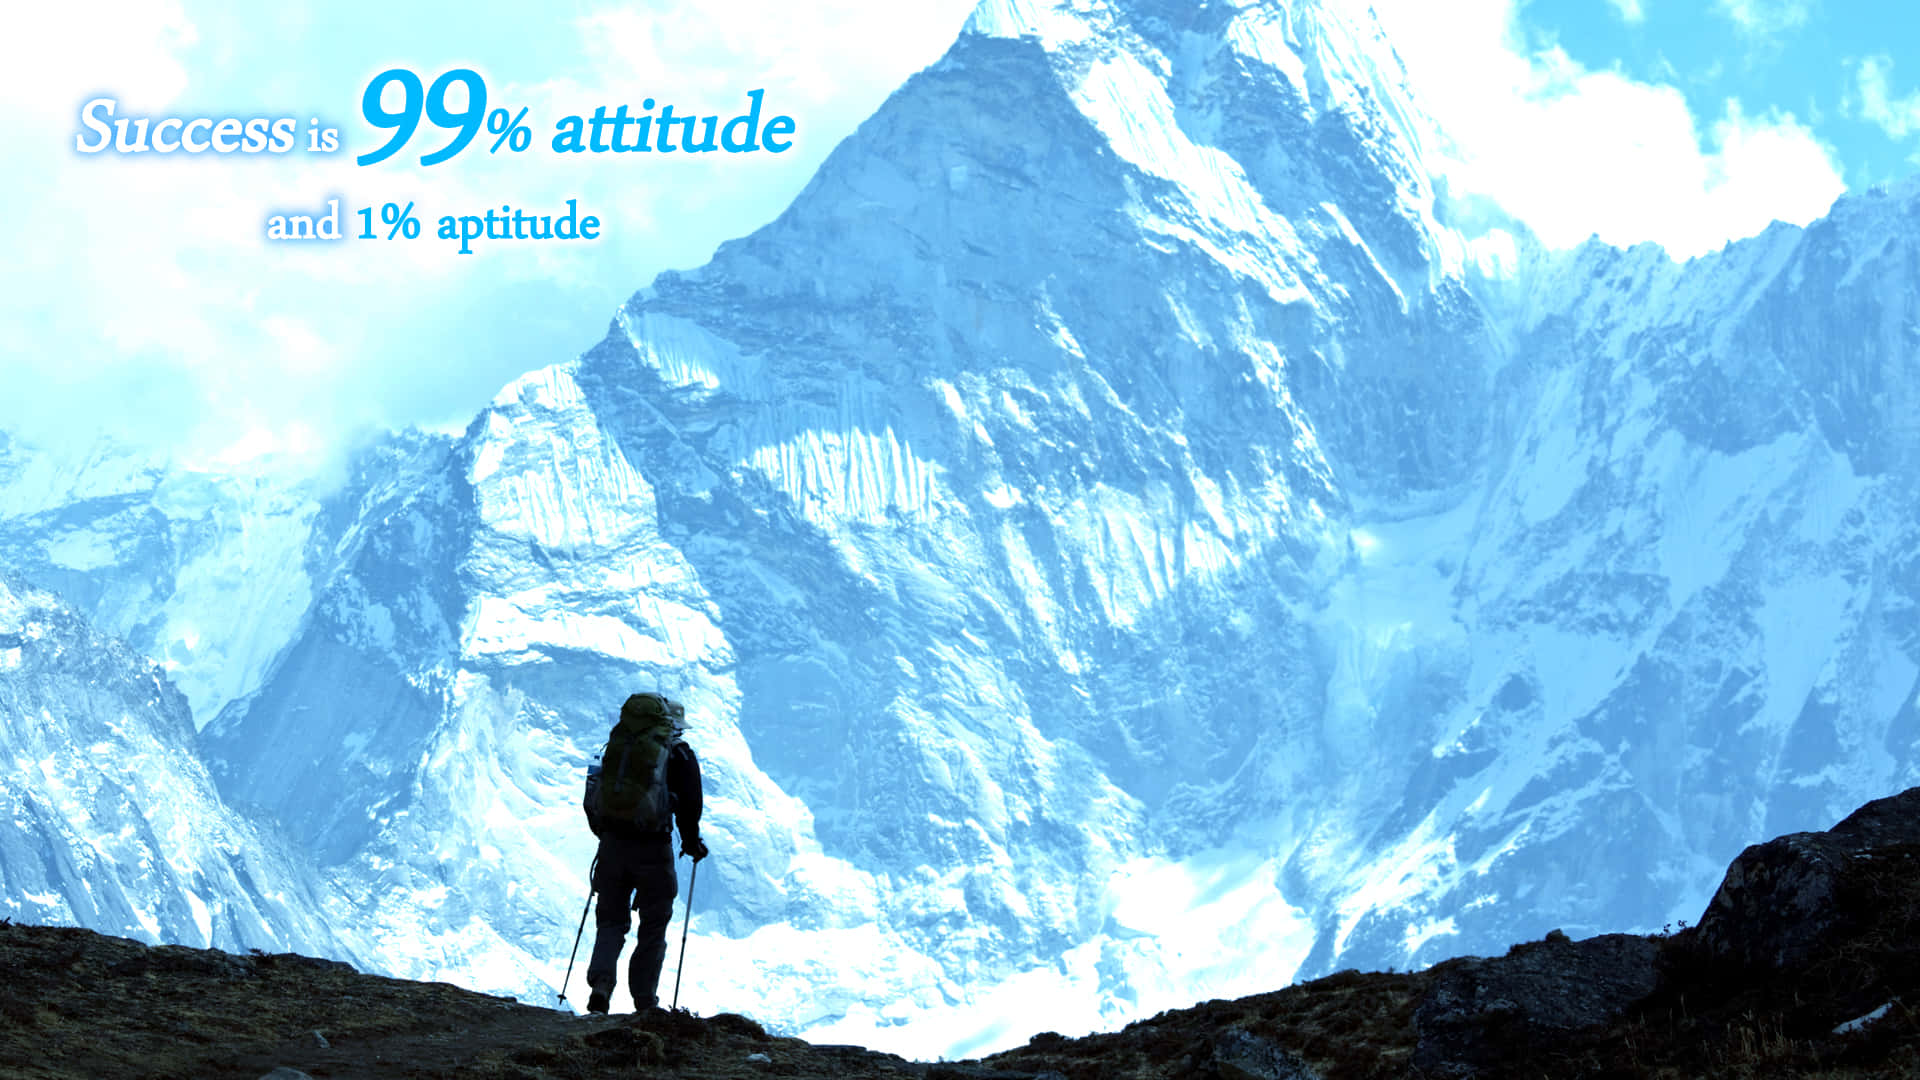 Eineperson Steht Auf Einem Berg Mit Den Worten Erfolg 99% Einstellung.